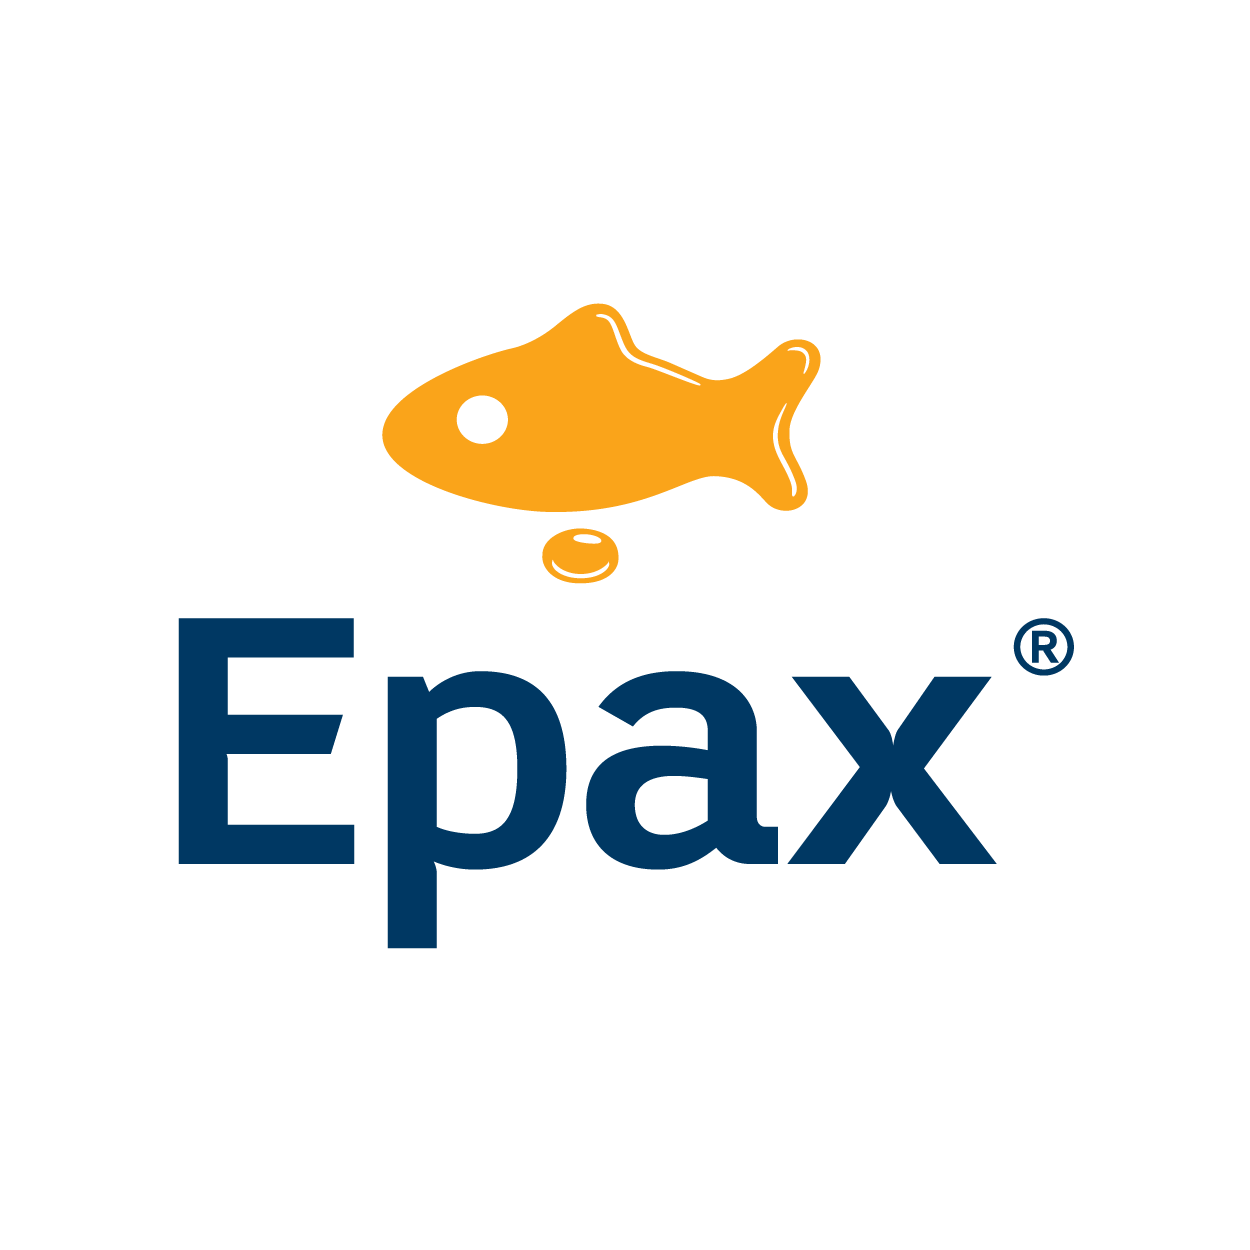 Epax Norway AS